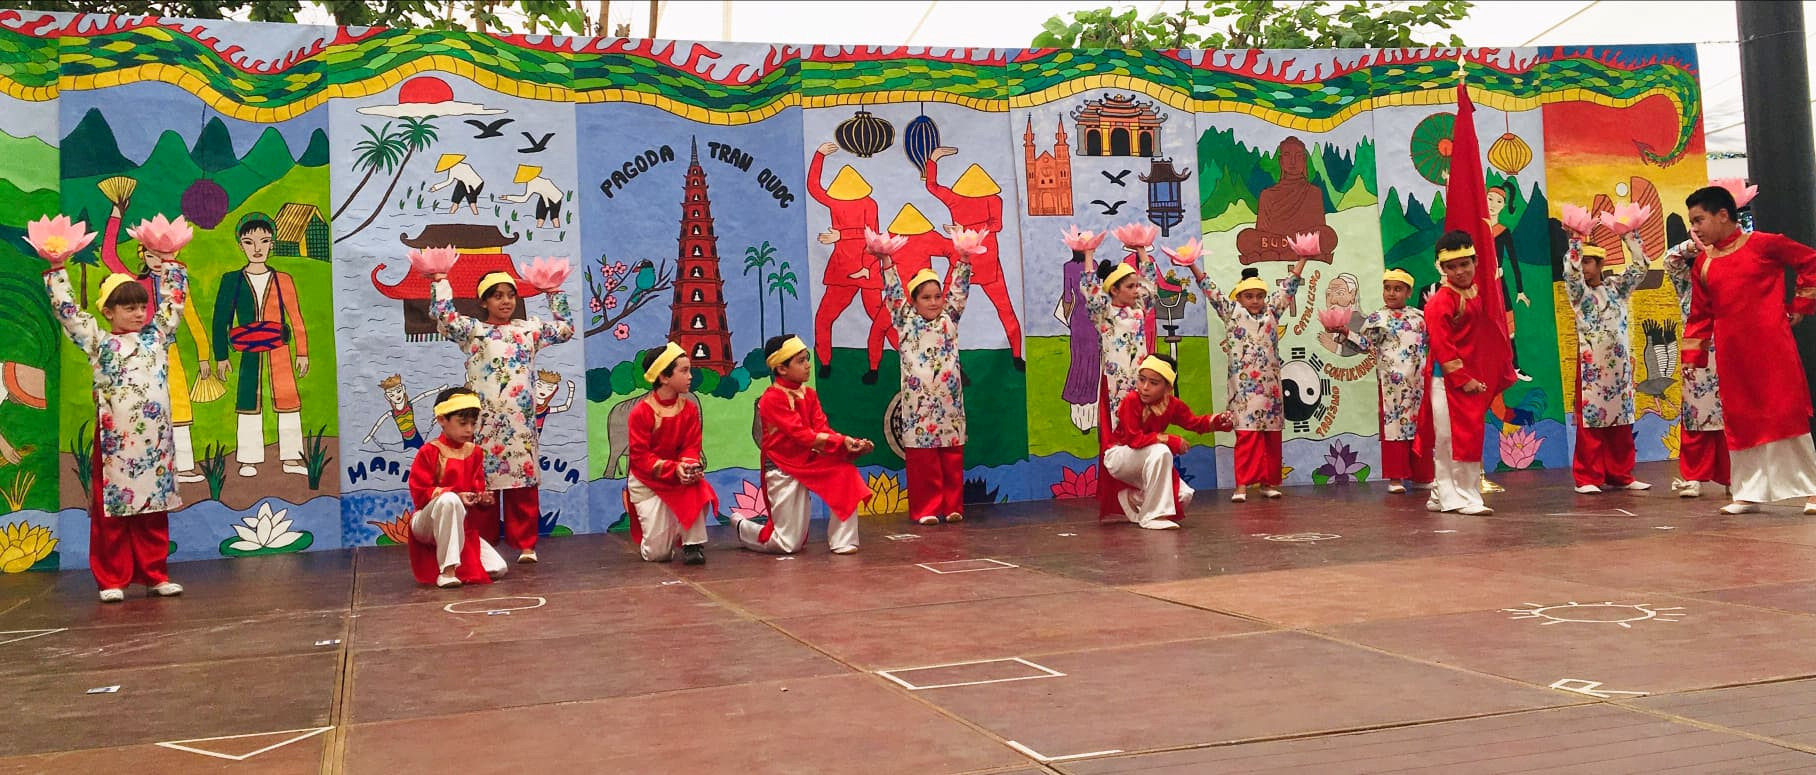 Rực rỡ sắc màu văn hóa Việt Nam tại Mexico